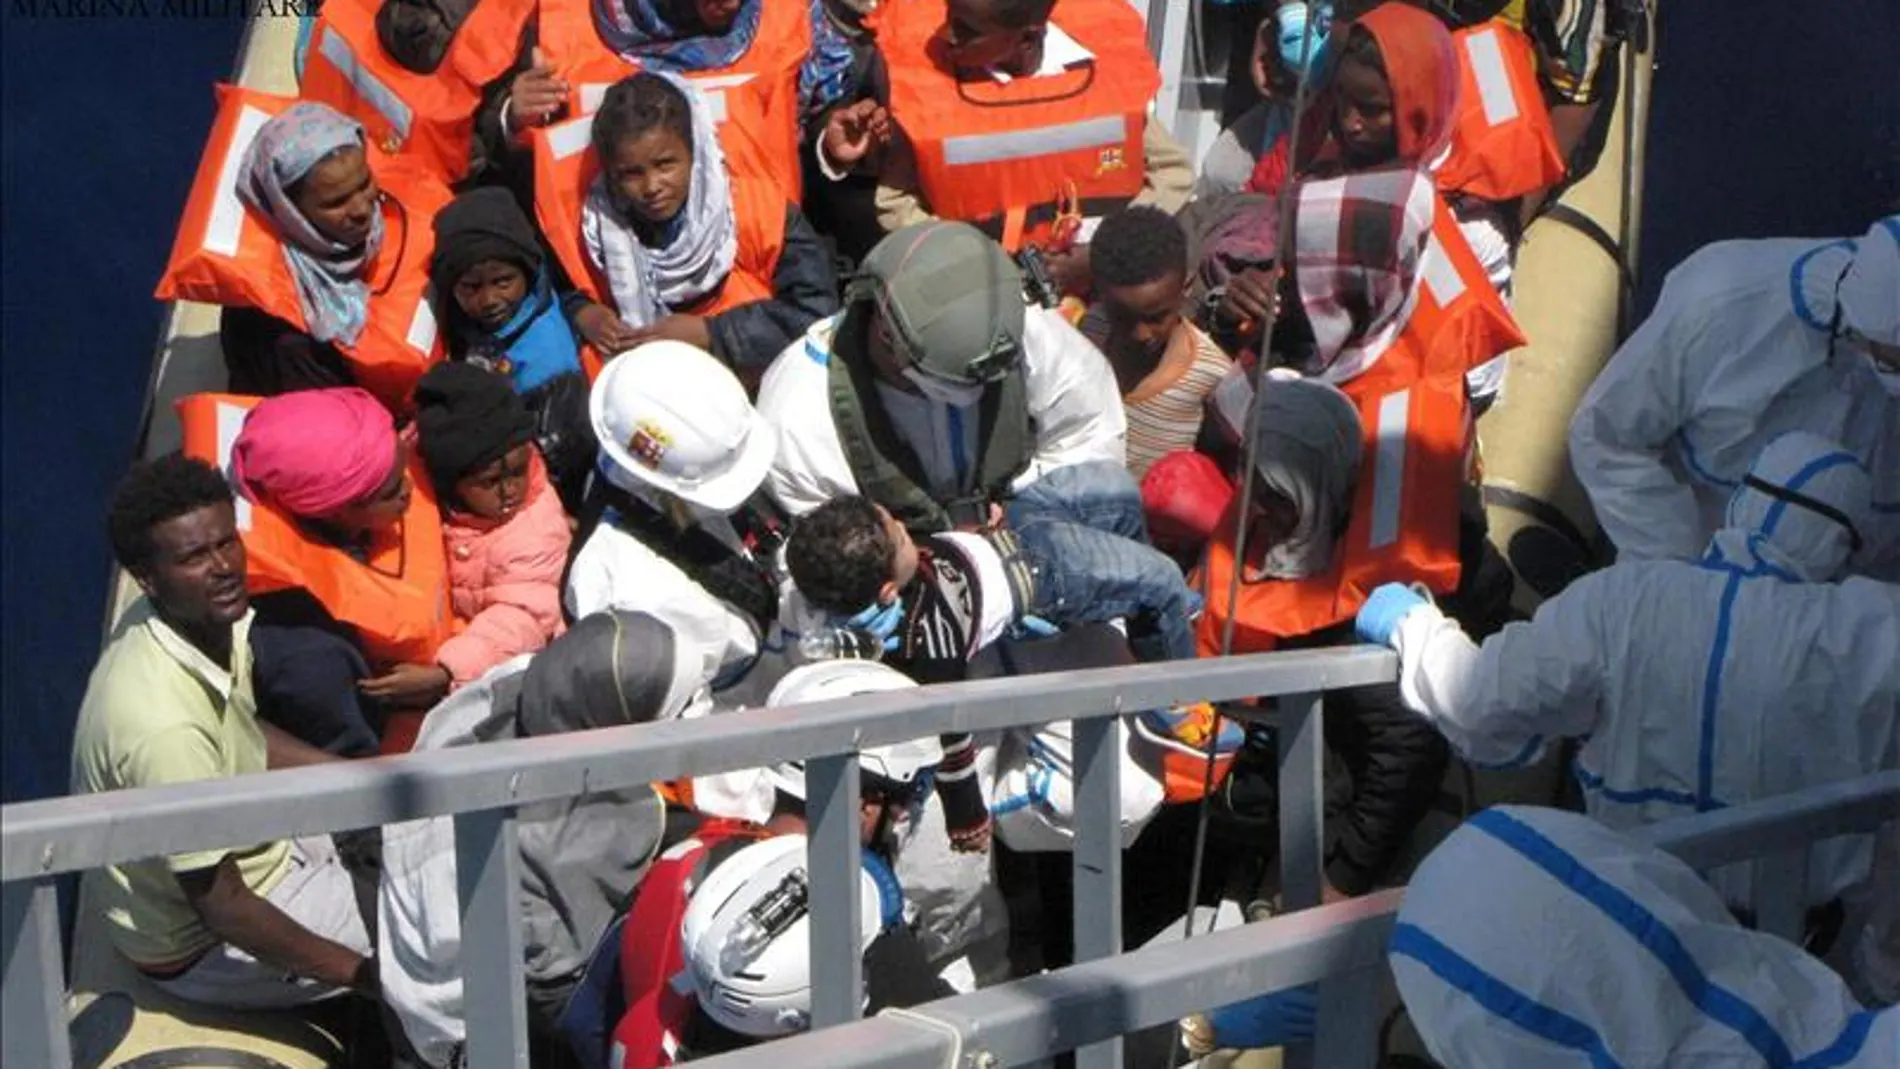 Inmigrantes de Libia rescatados en aguas italianas